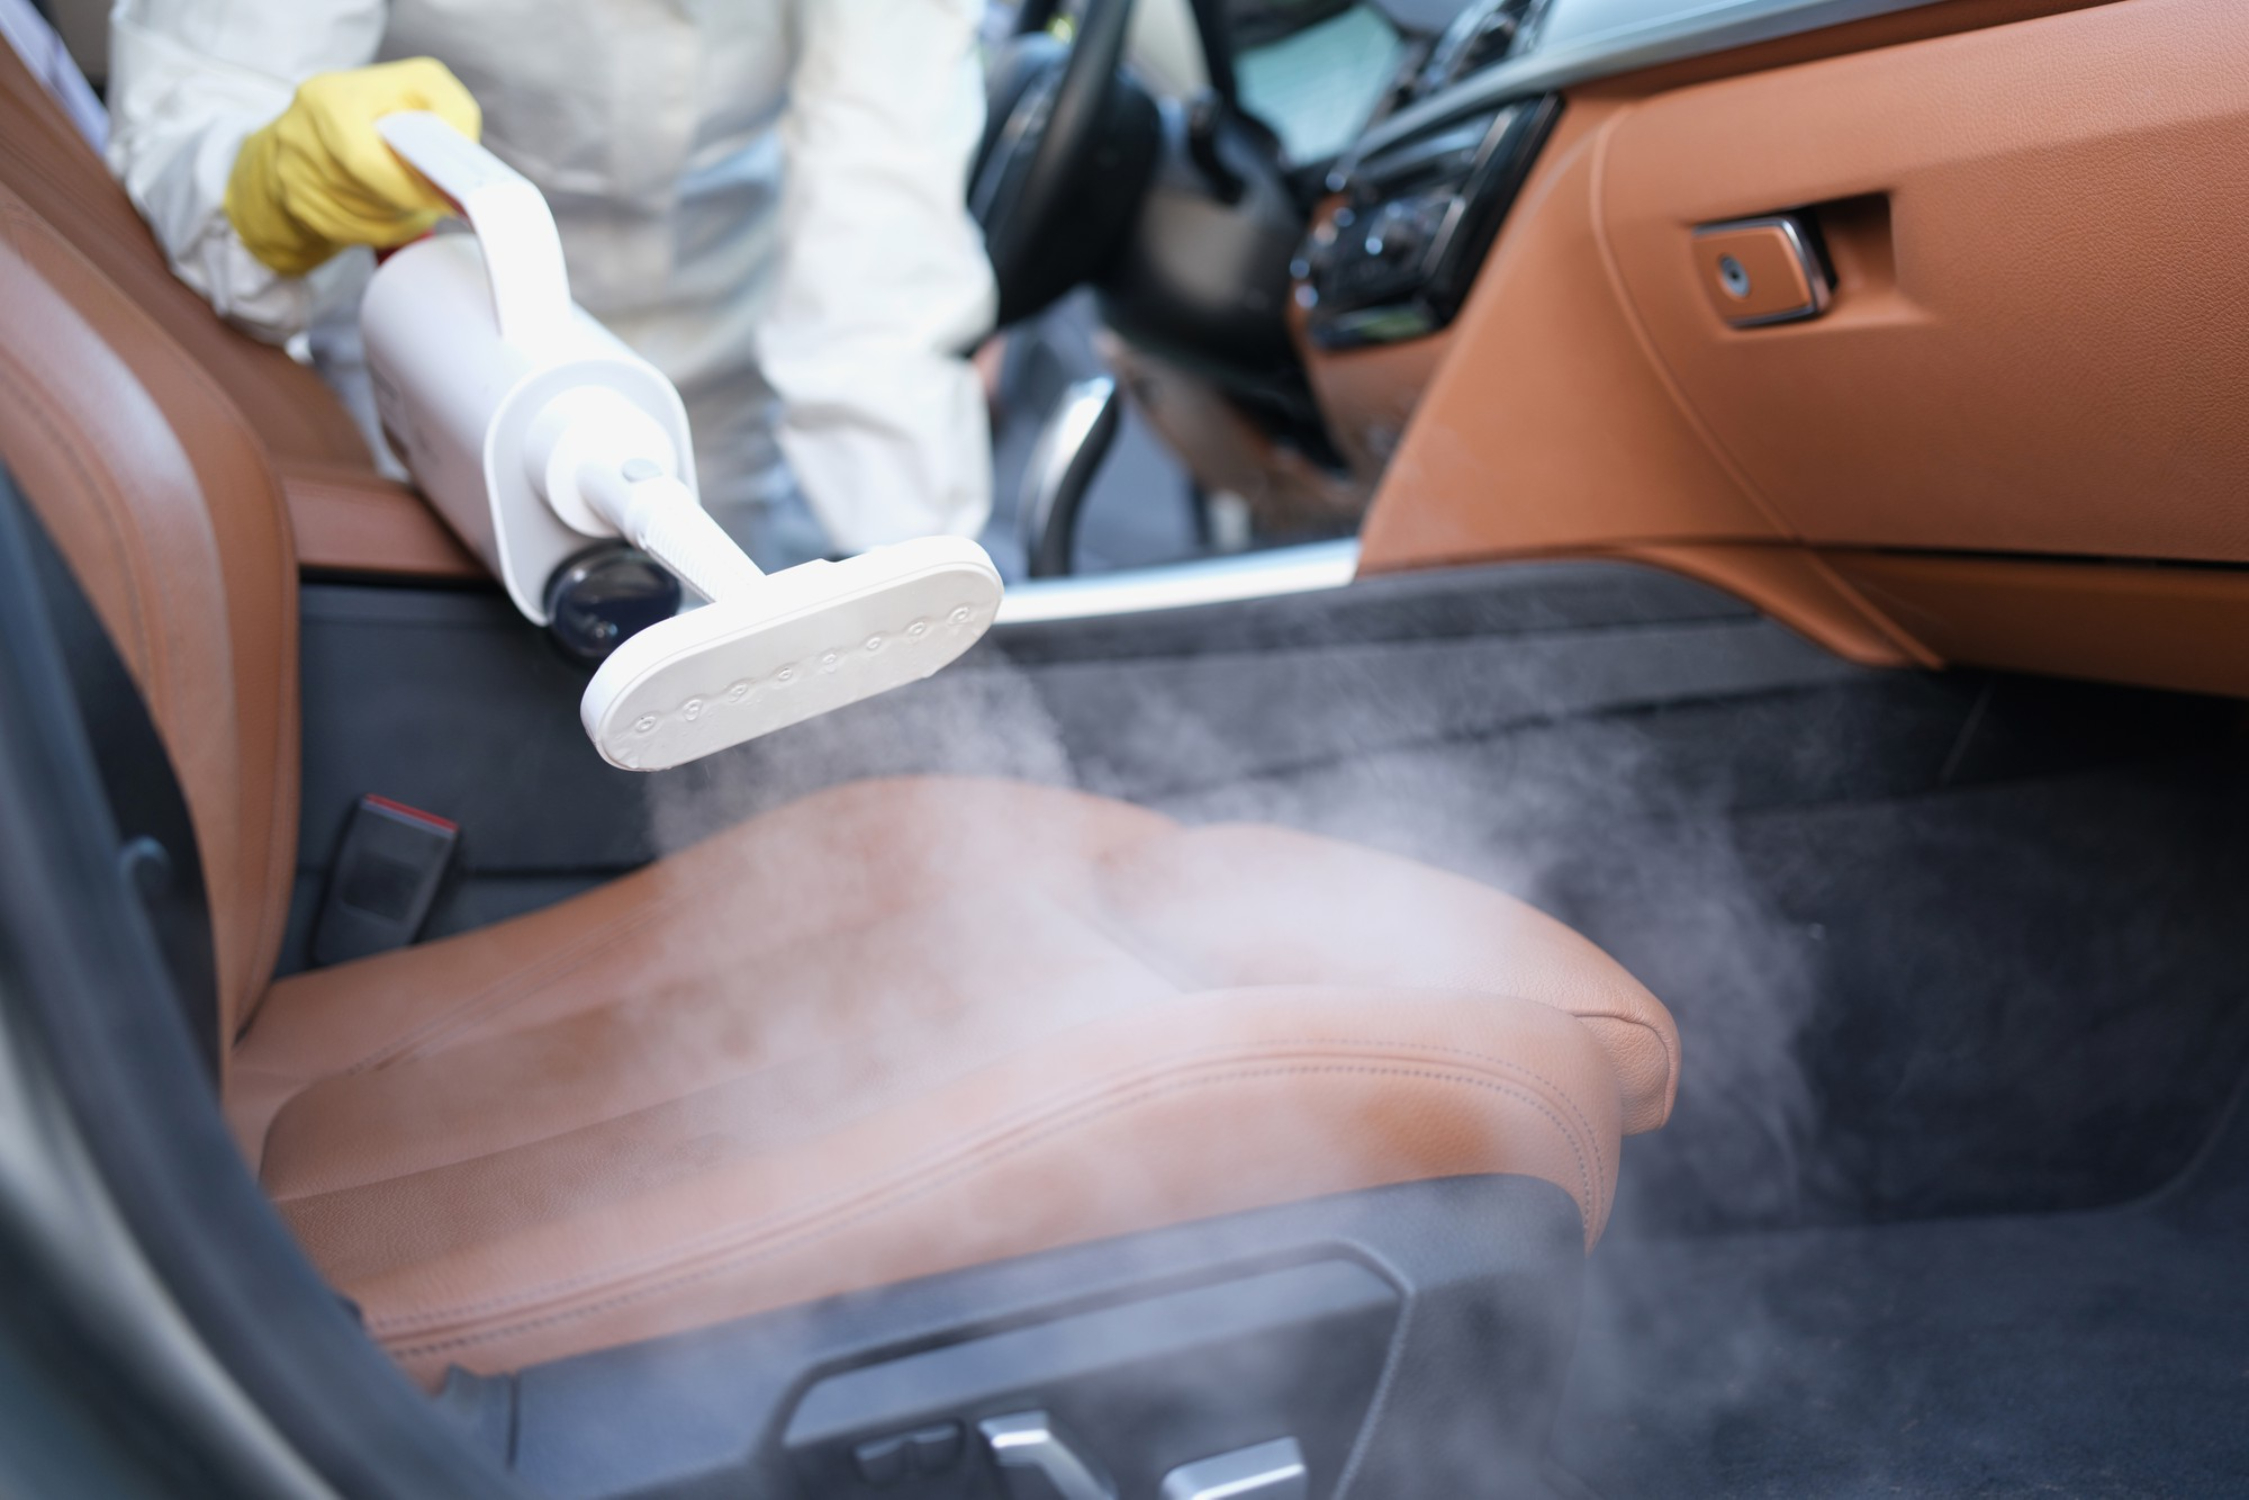 Masz w swoim samochodzie skórzaną tapicerkę? Koniecznie zapoznaj się z poradami dotyczącymi jej czyszczenia